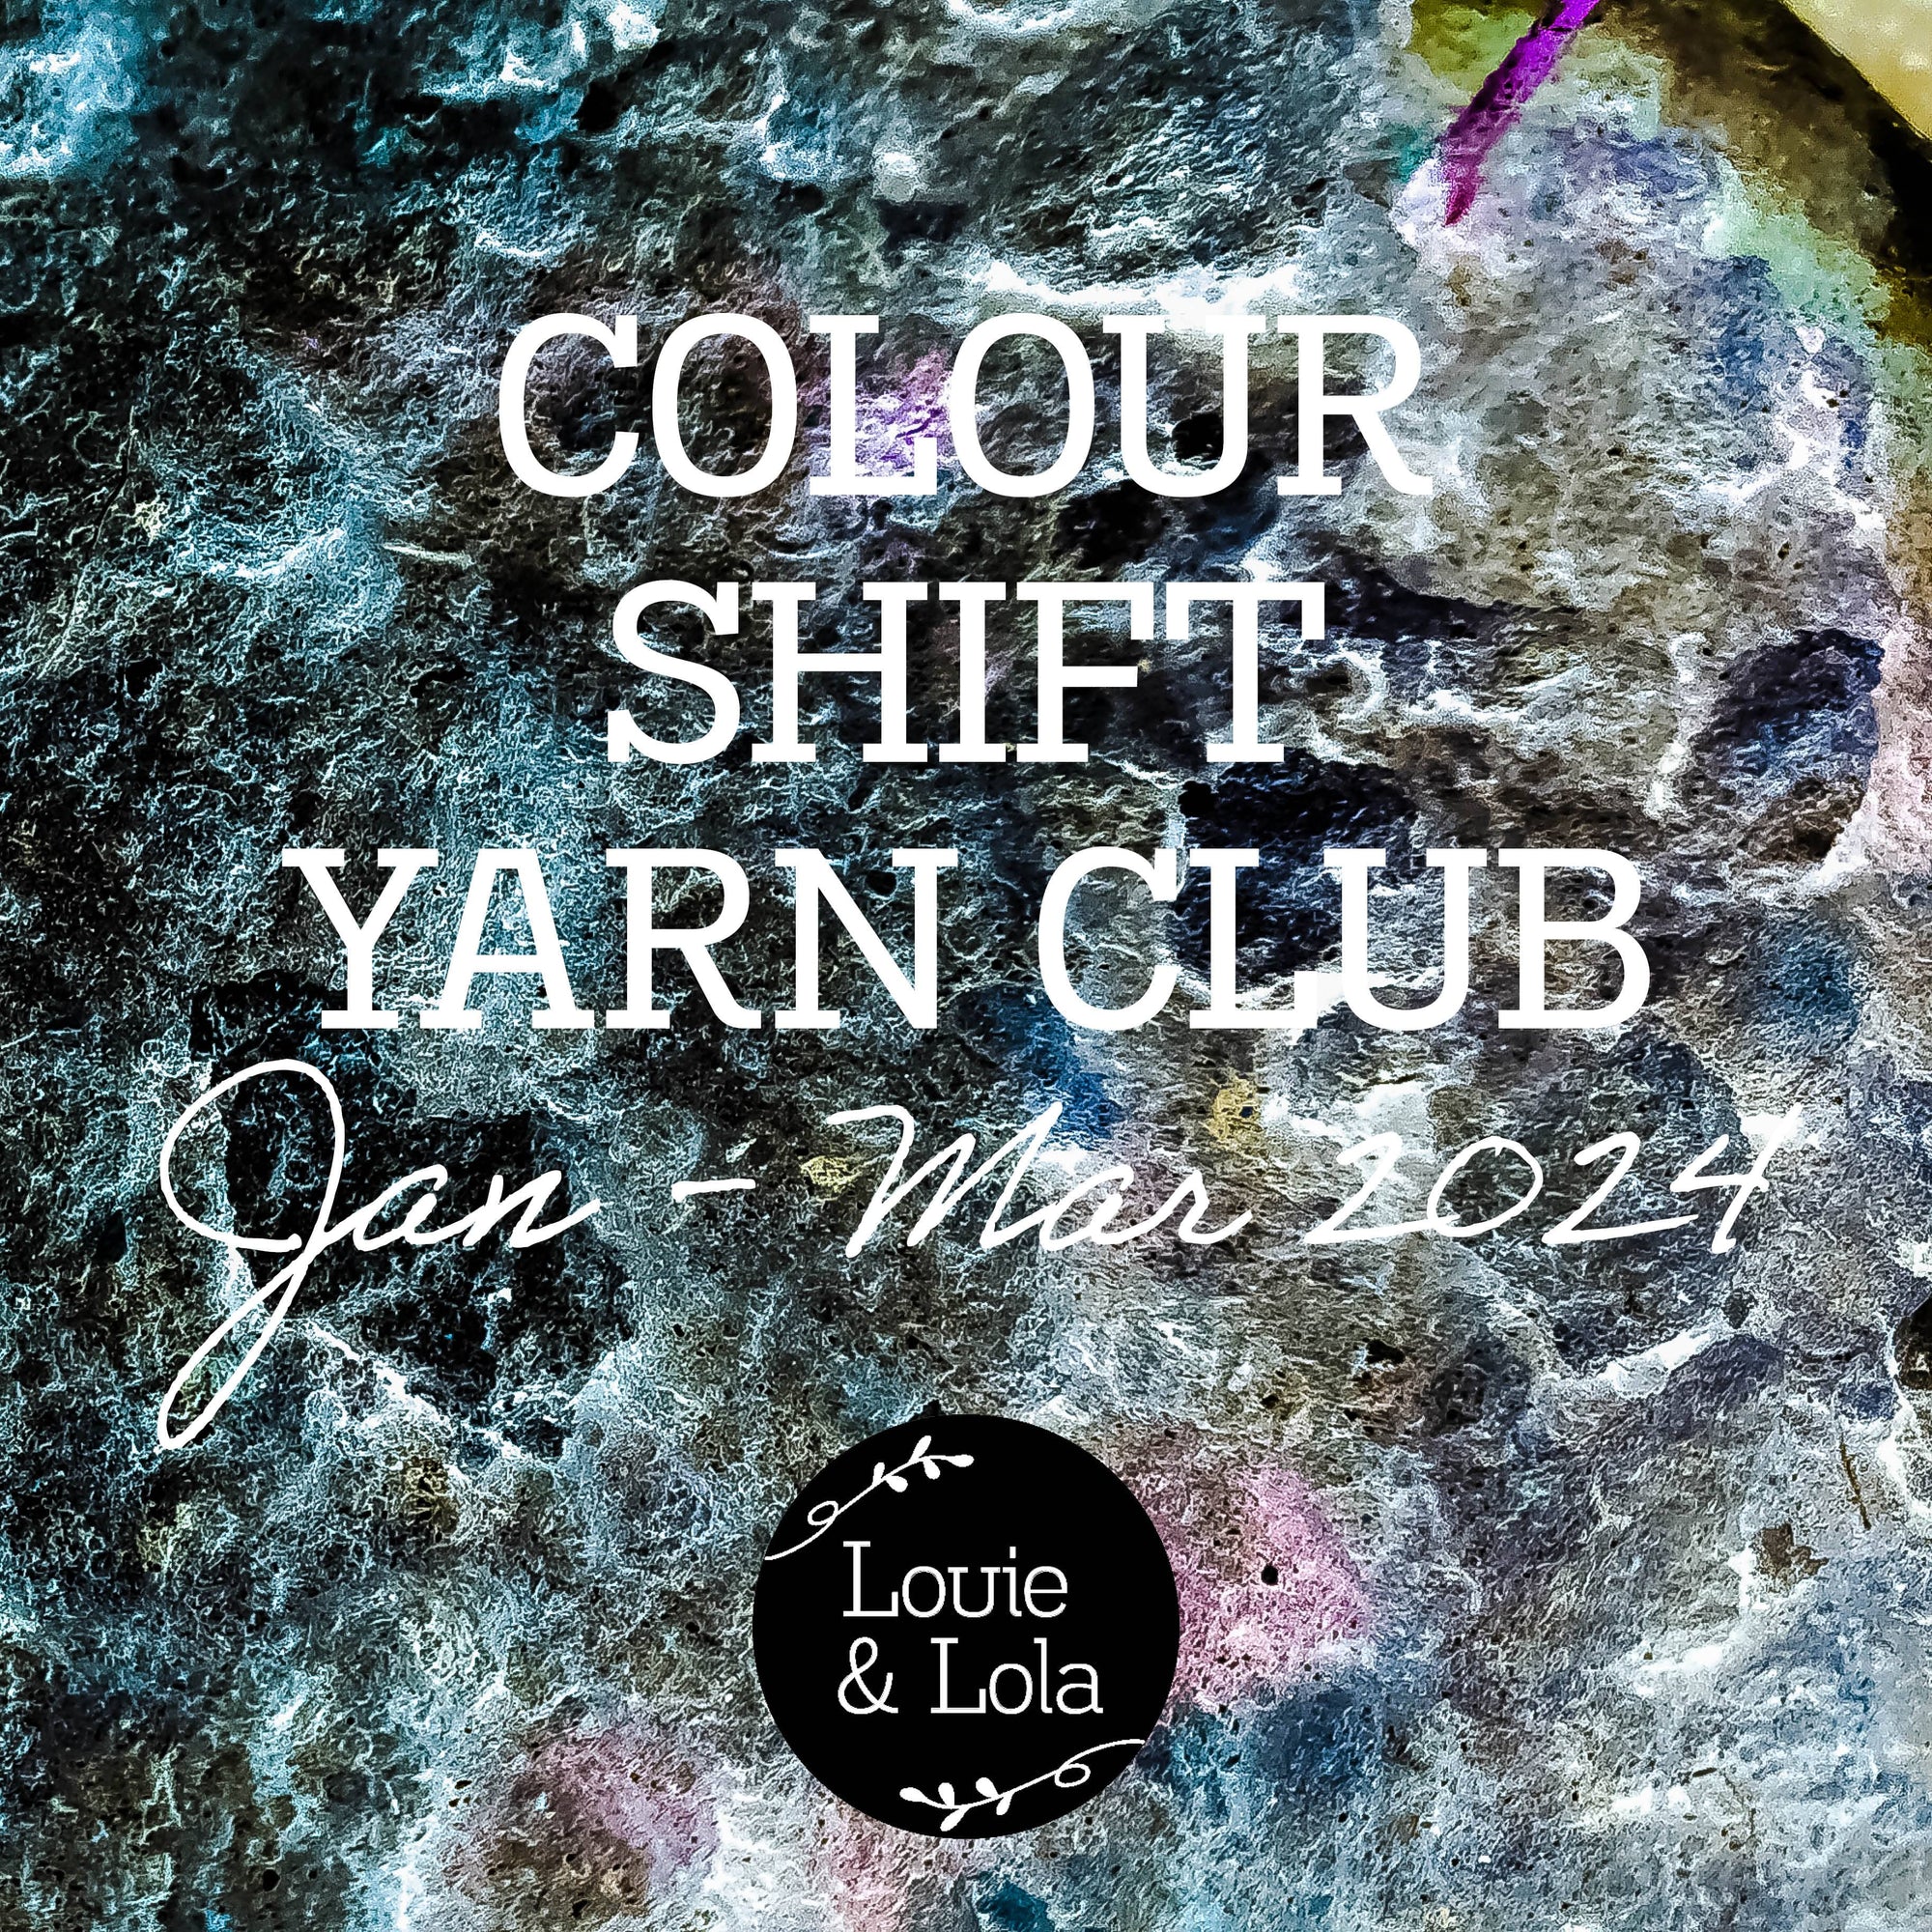 Yarn Clubs